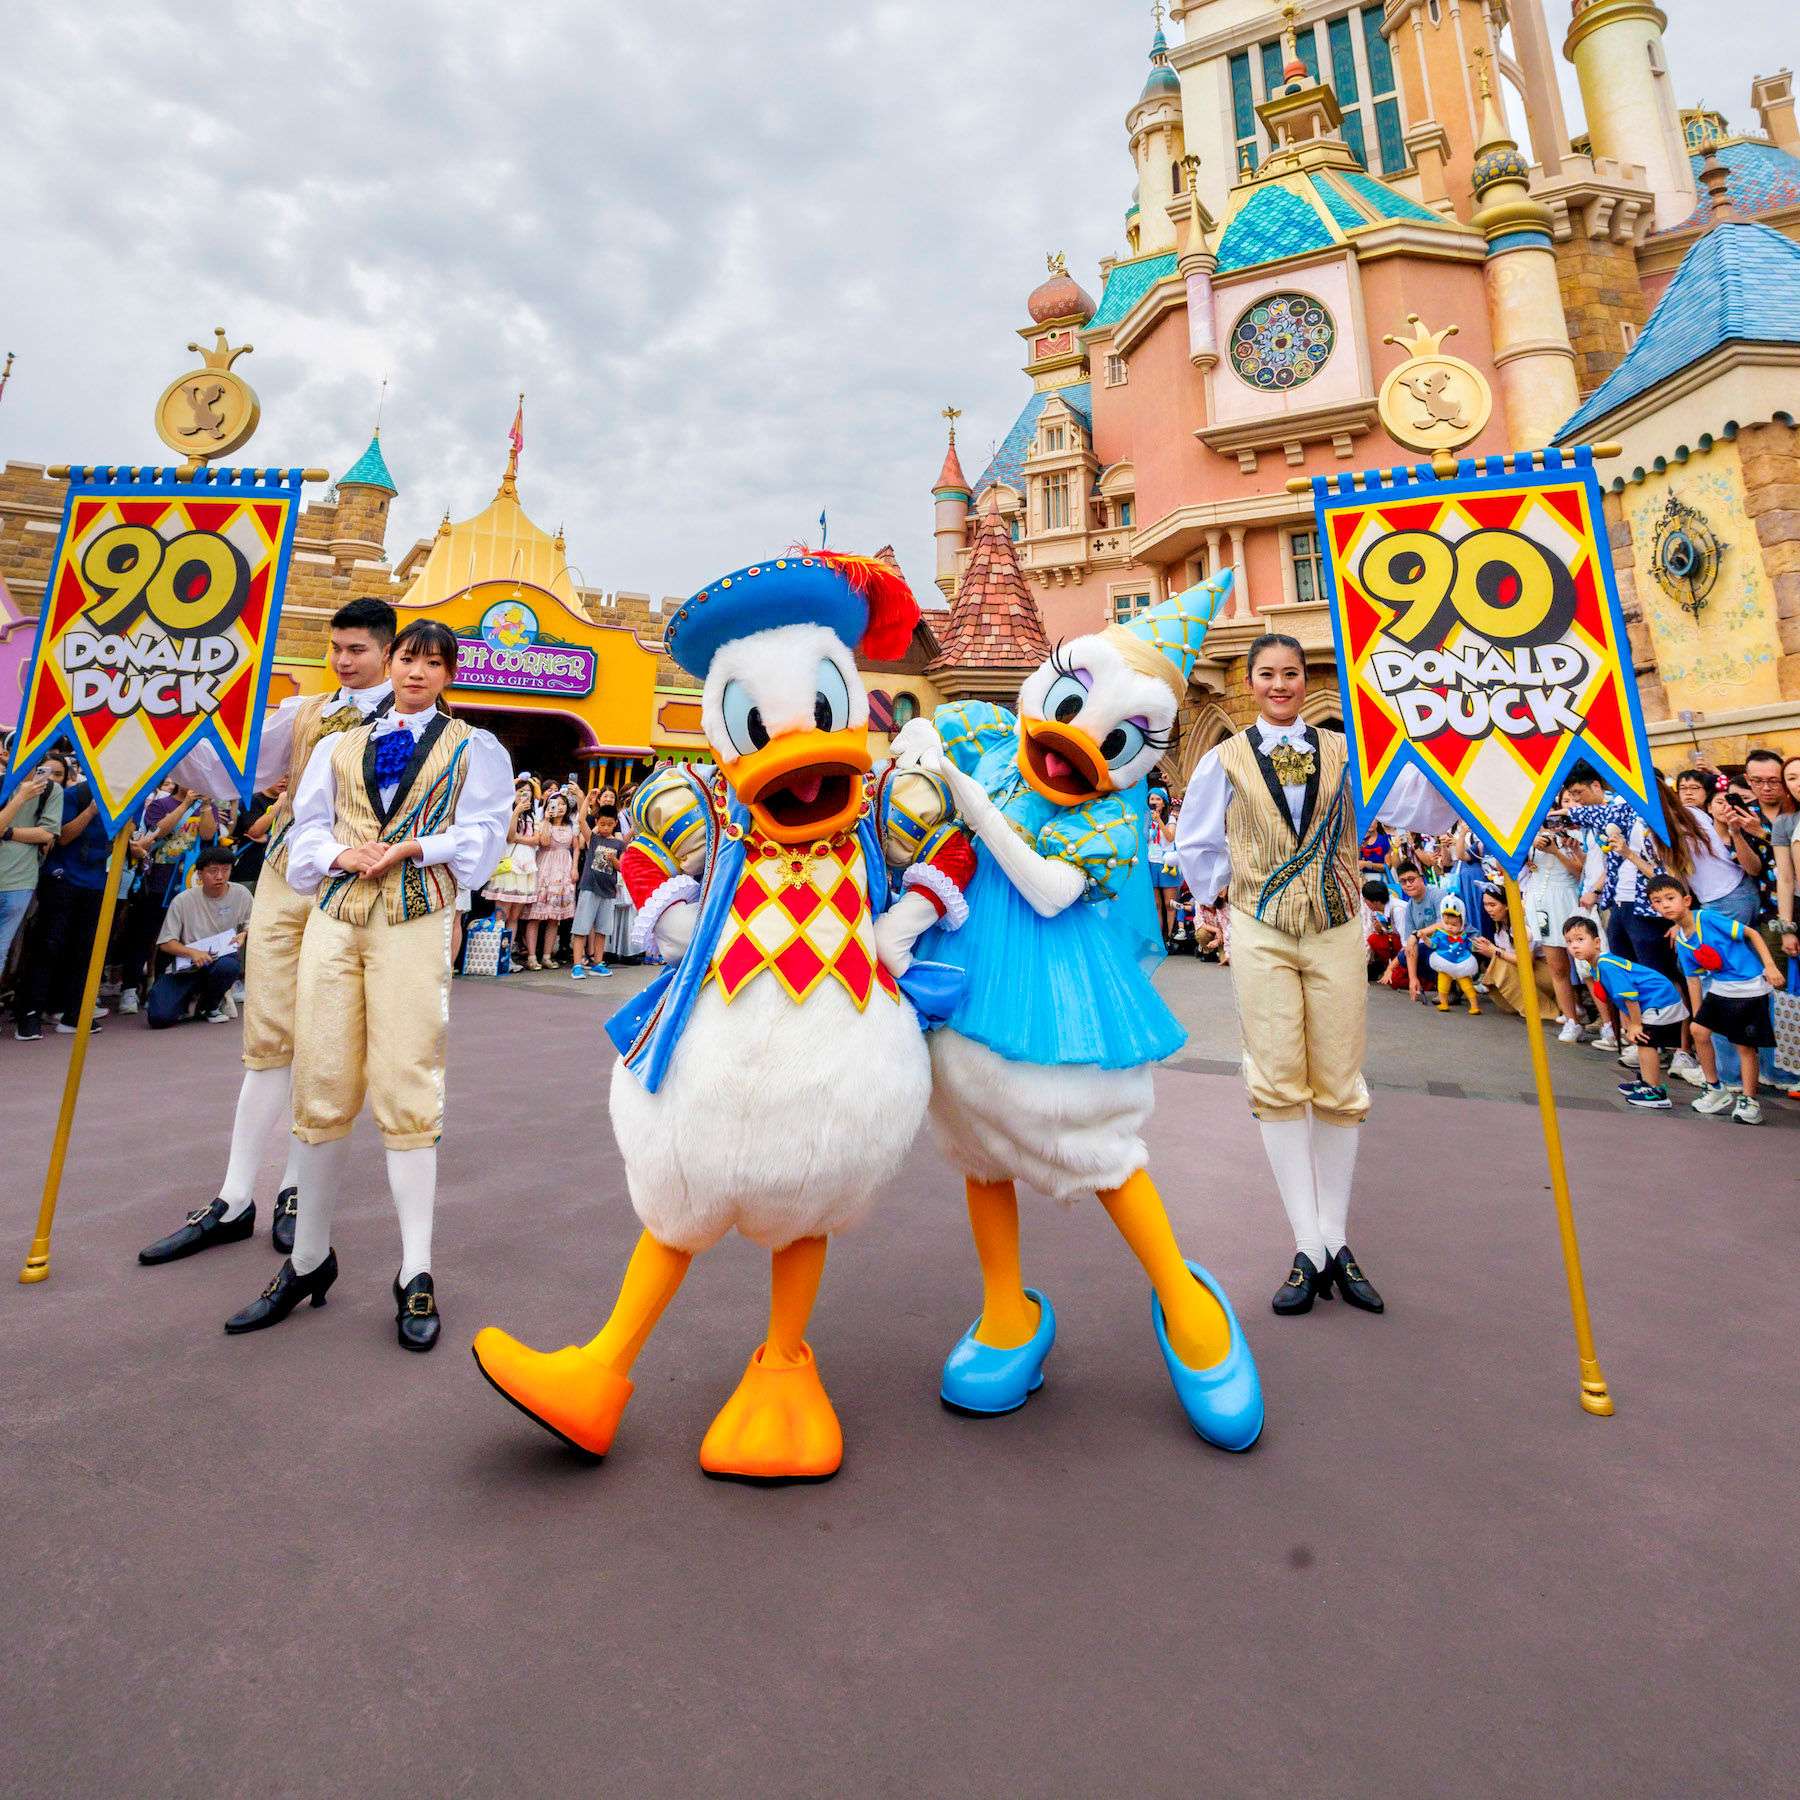 Hong Kong Welcomes Mainland China Delegates for VIP Tour including Hong Kong Disneyland